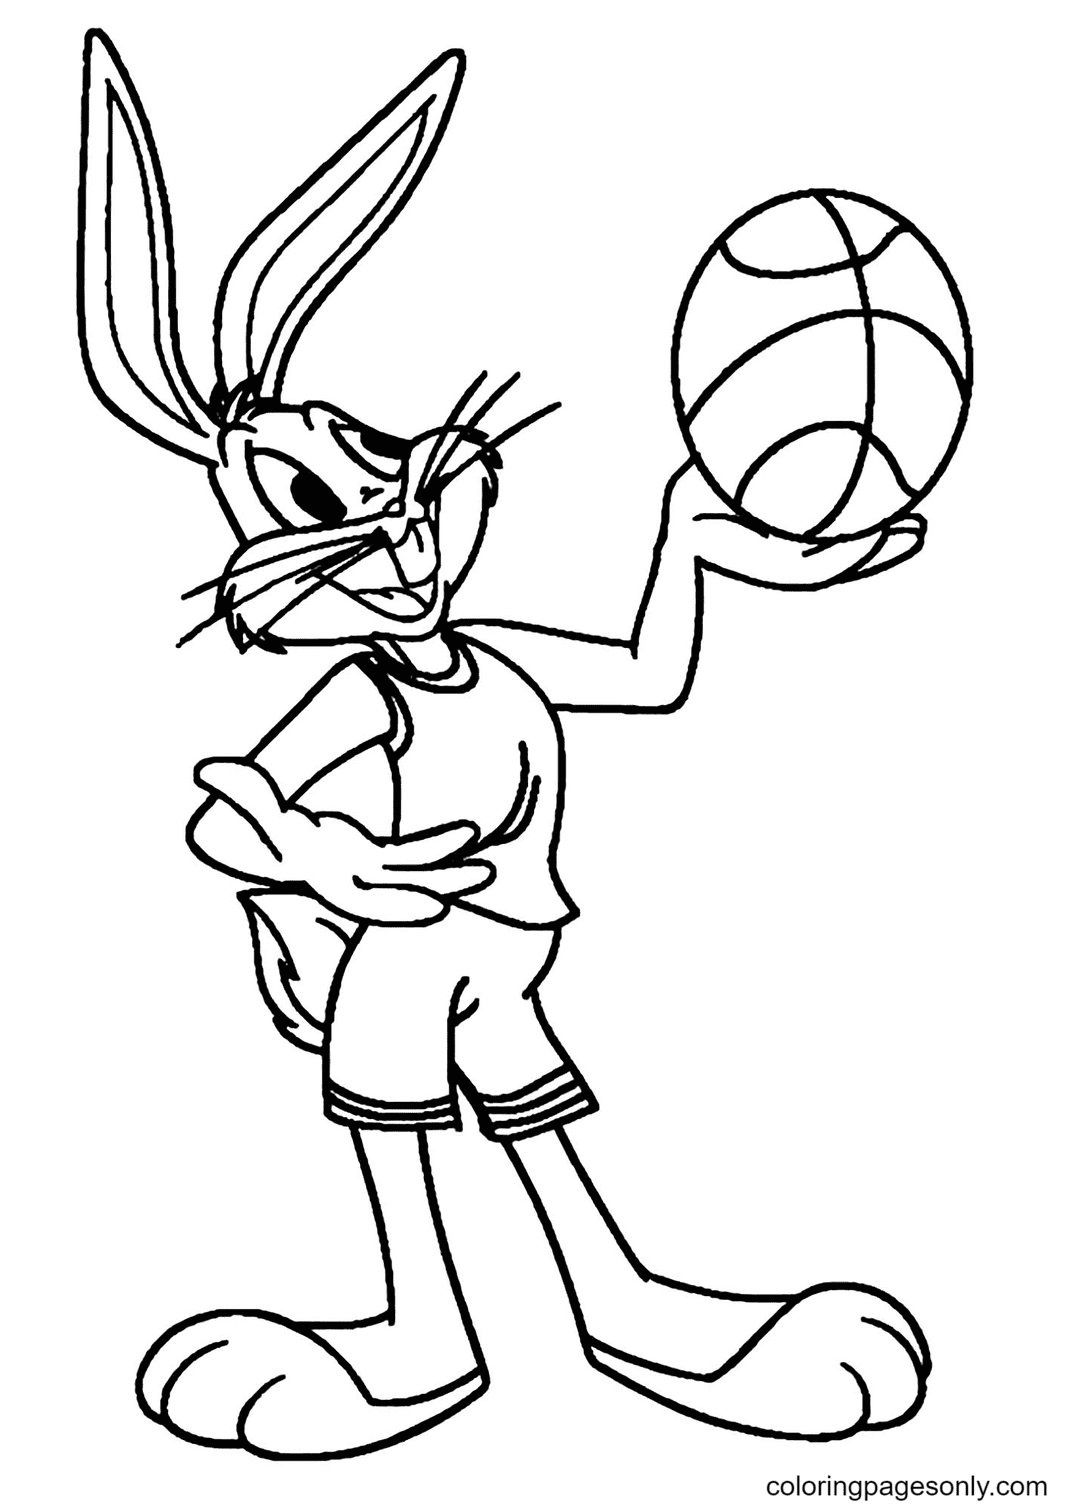 Раскраска Багз Банни с баскетбольным мячом